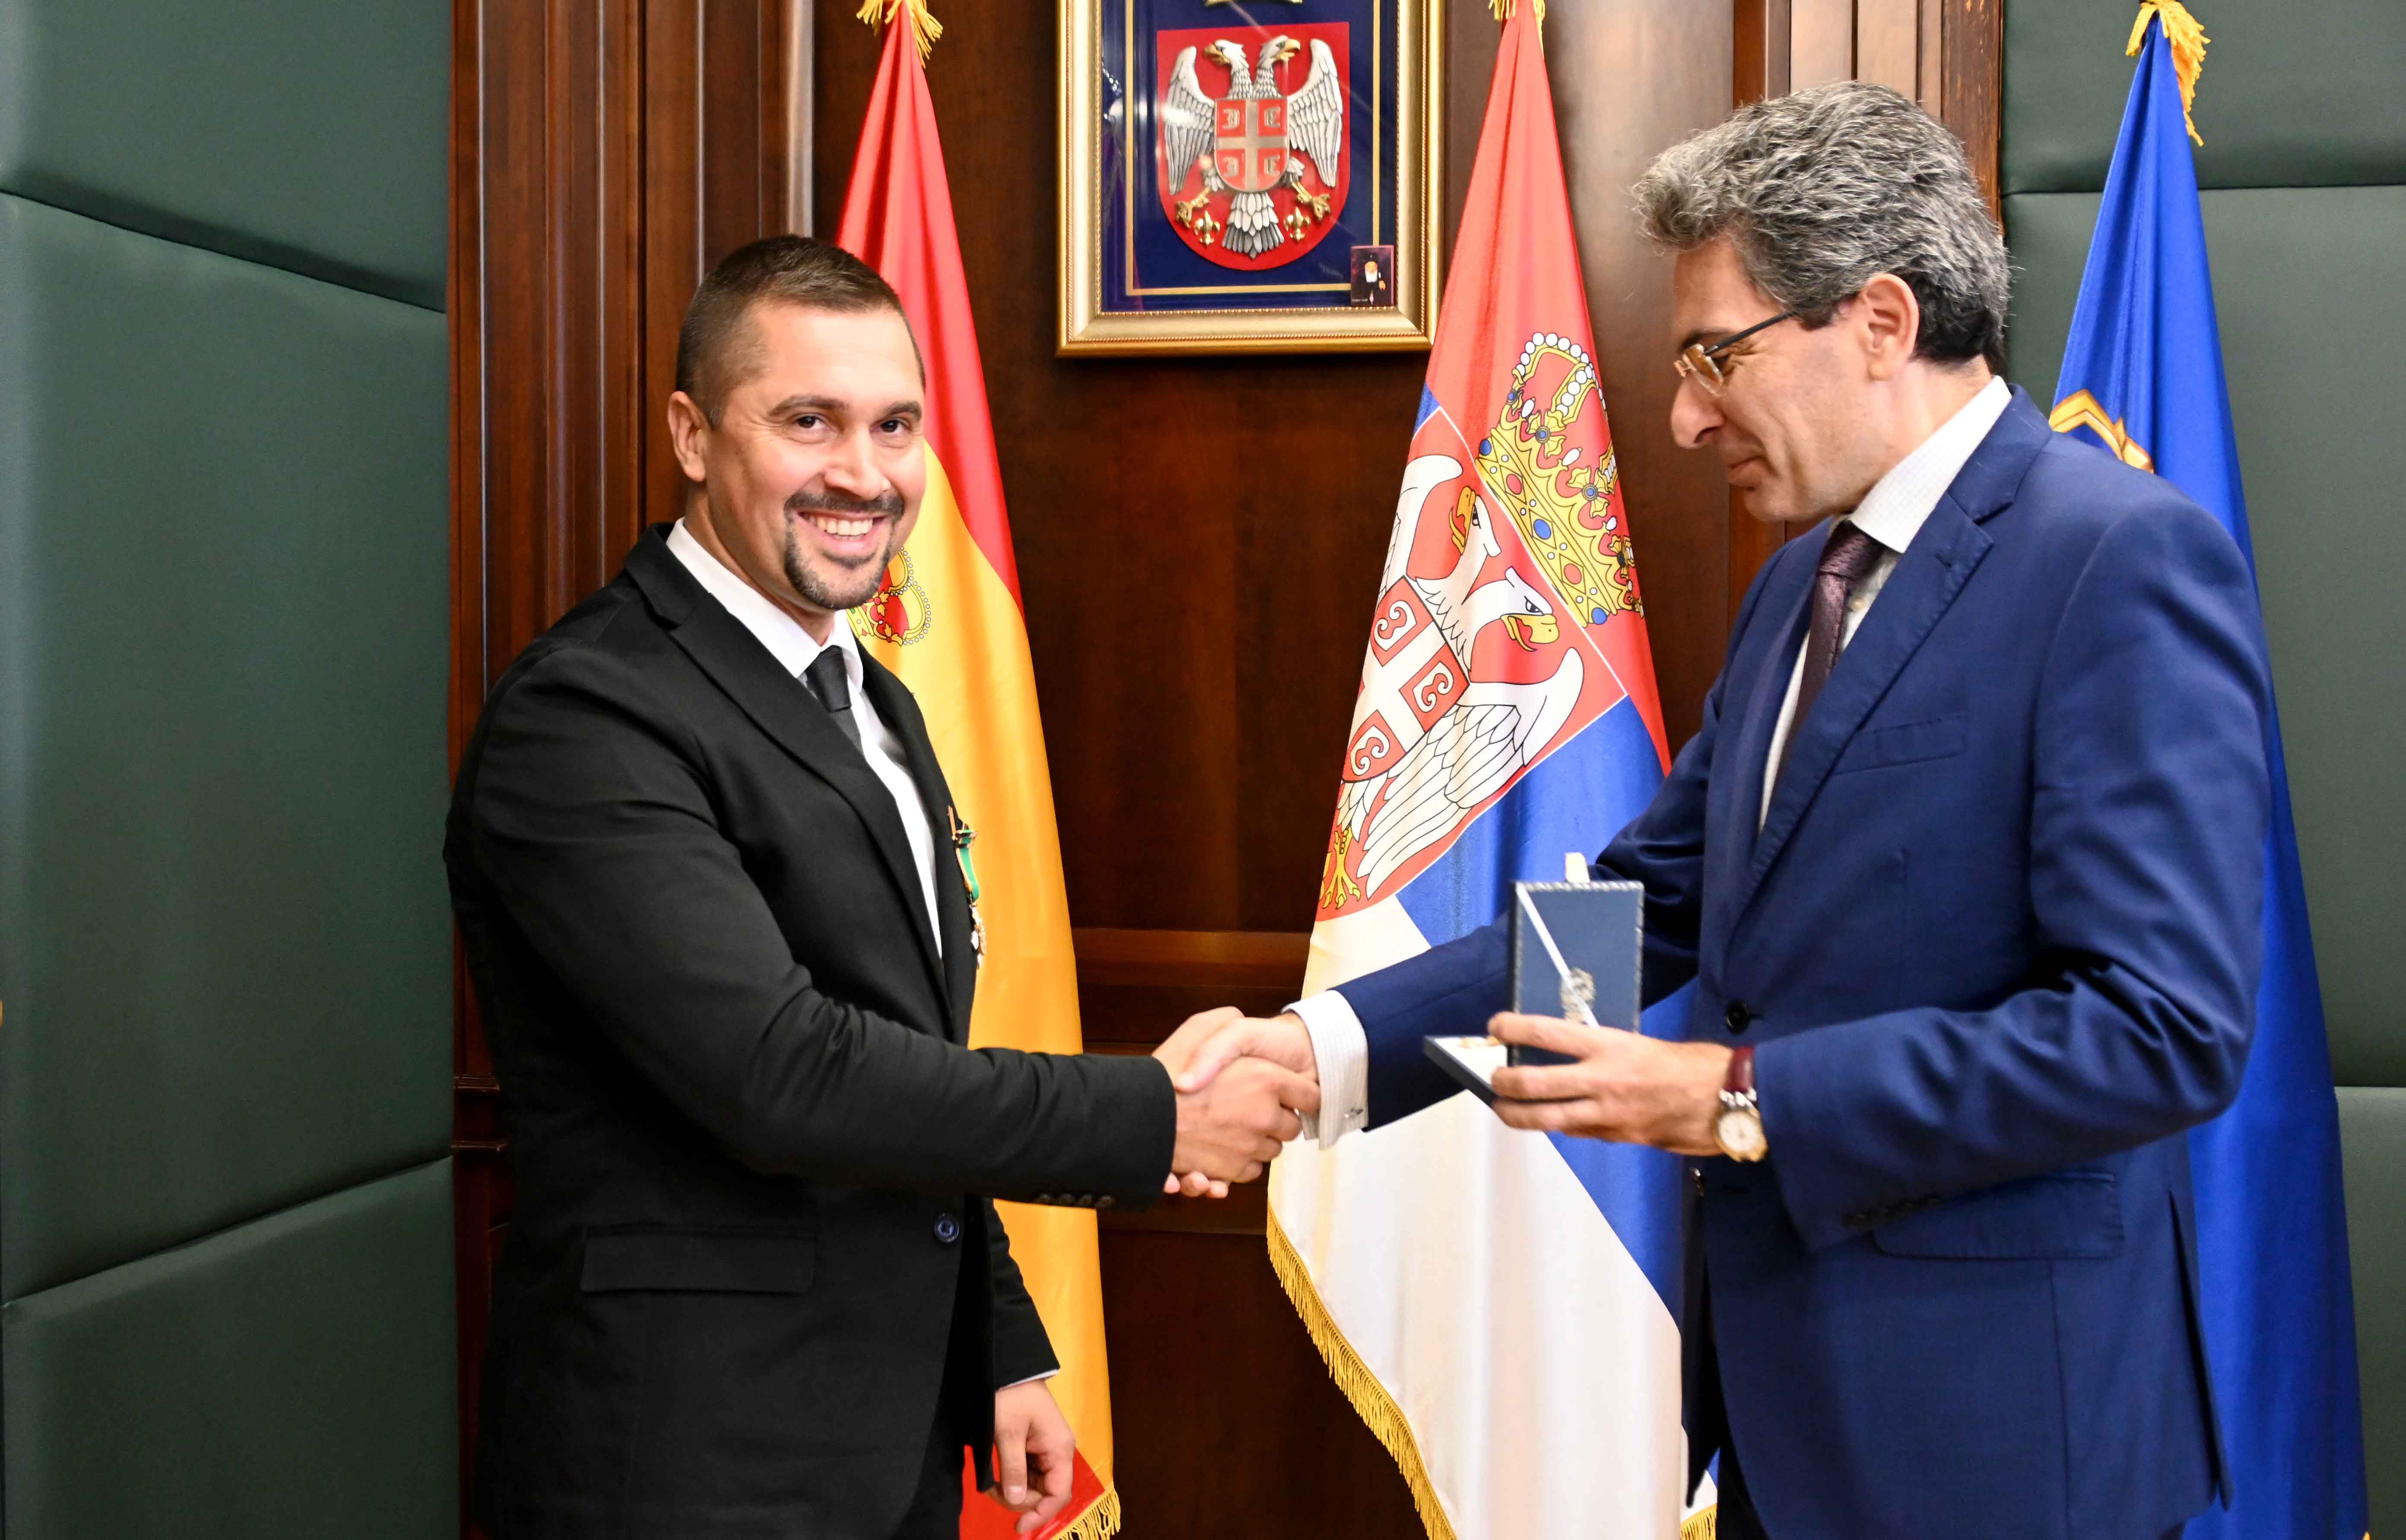 Uručena odlikovanja policijskim službenicima Kralјevine Španije i Republike Srbije